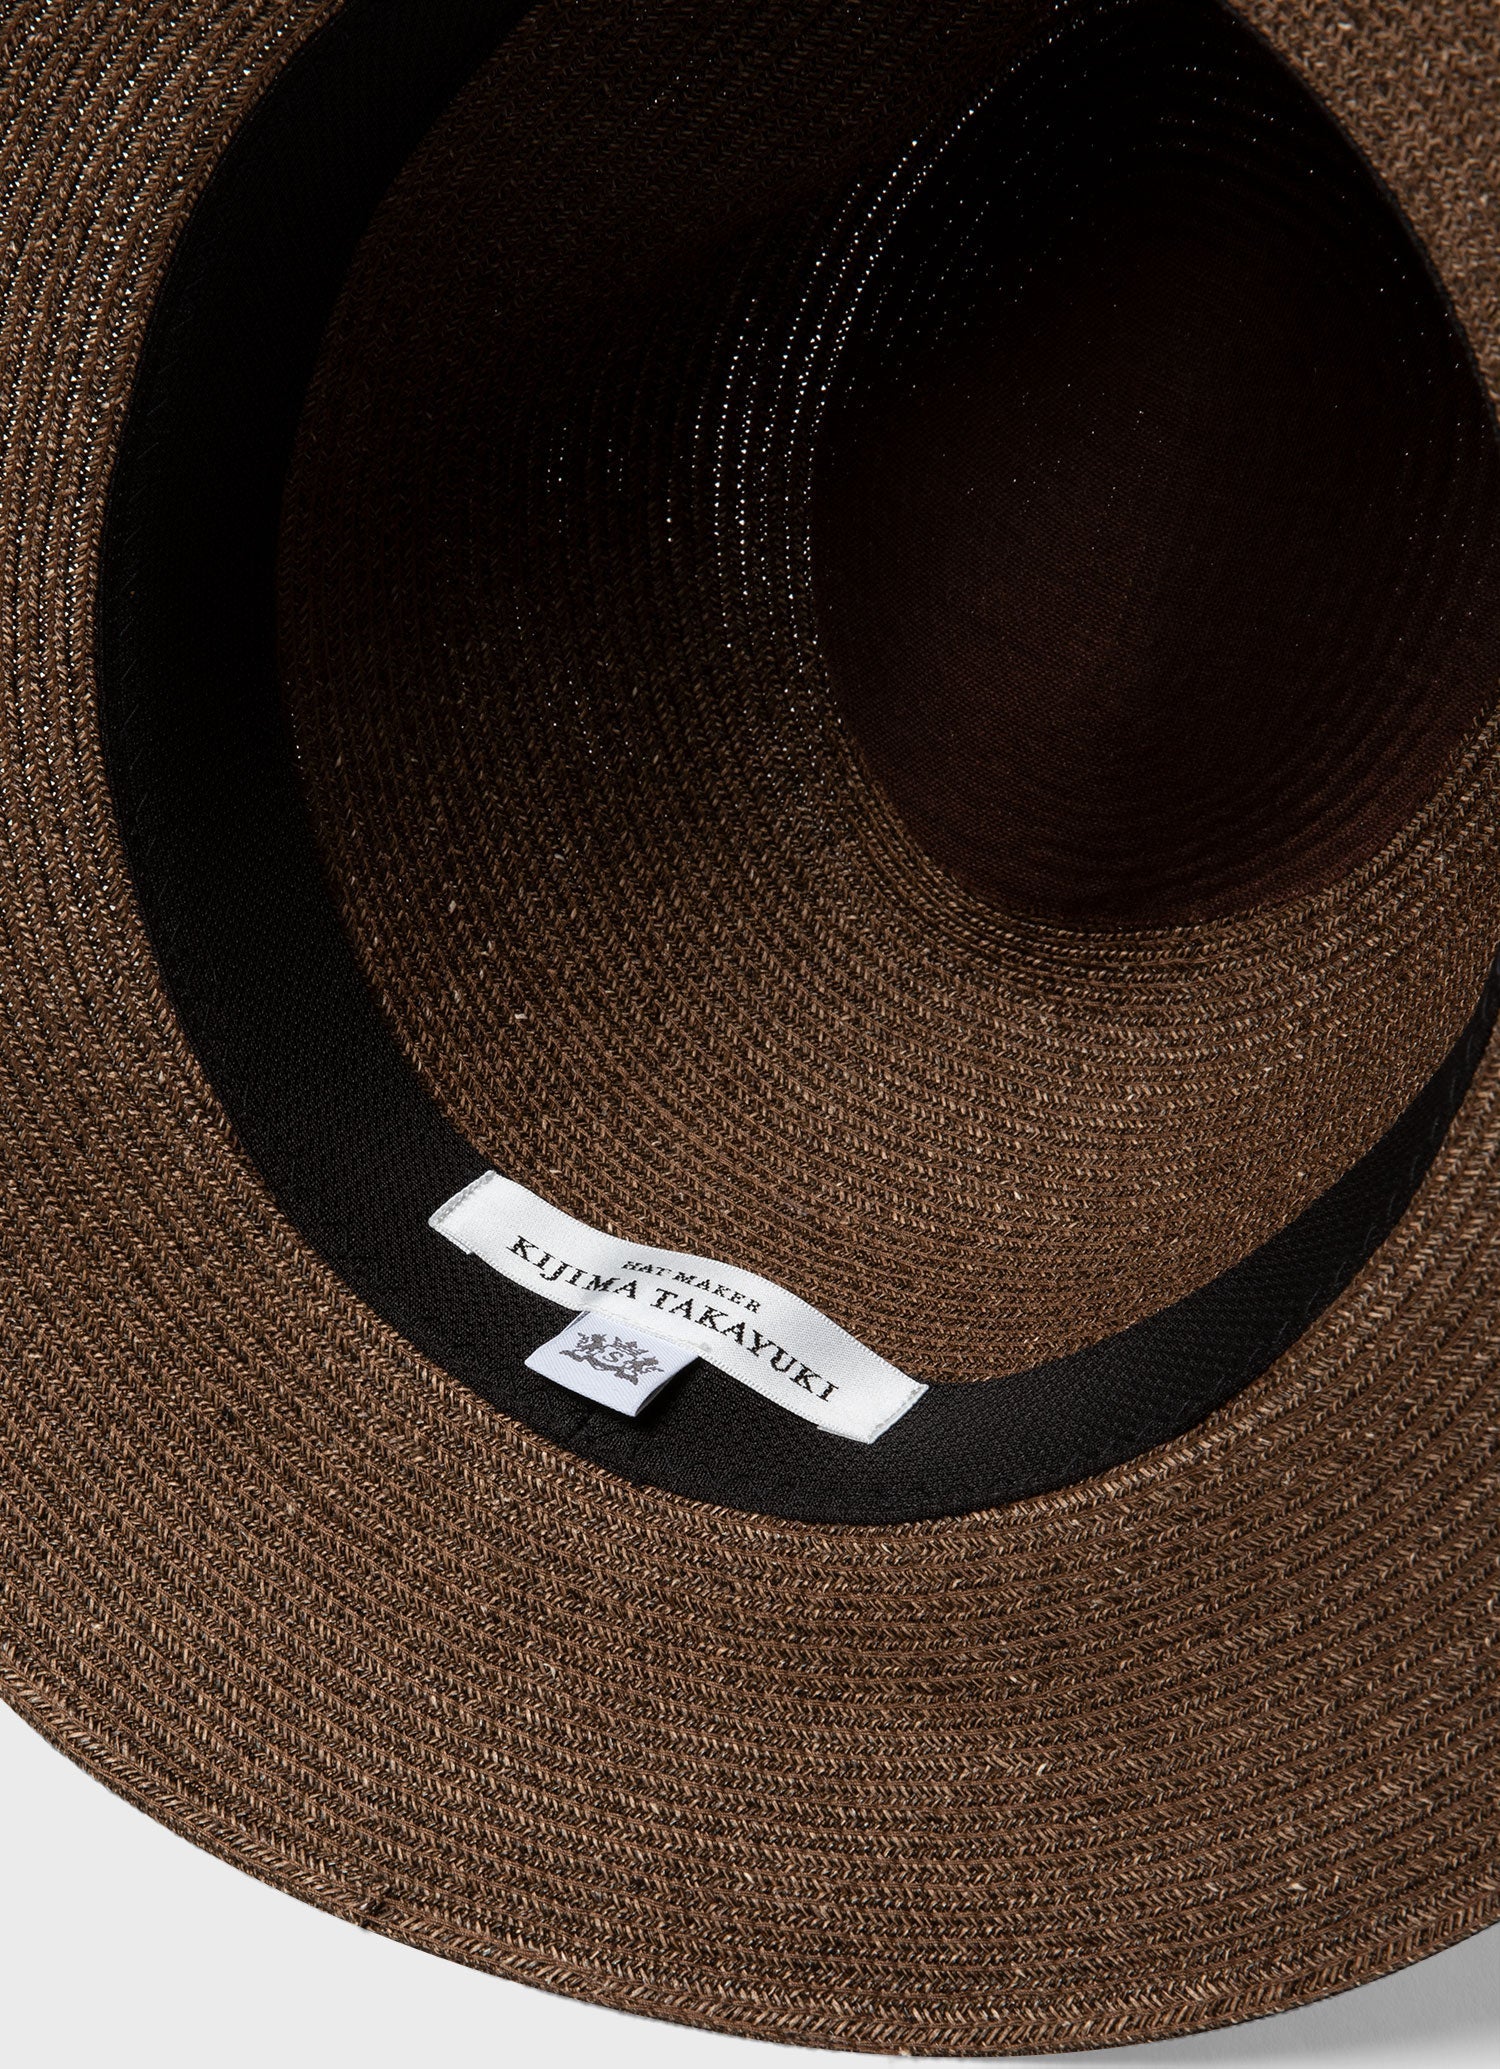 Men's Kijima Takayuki Paper Hat in Brown | Sunspel